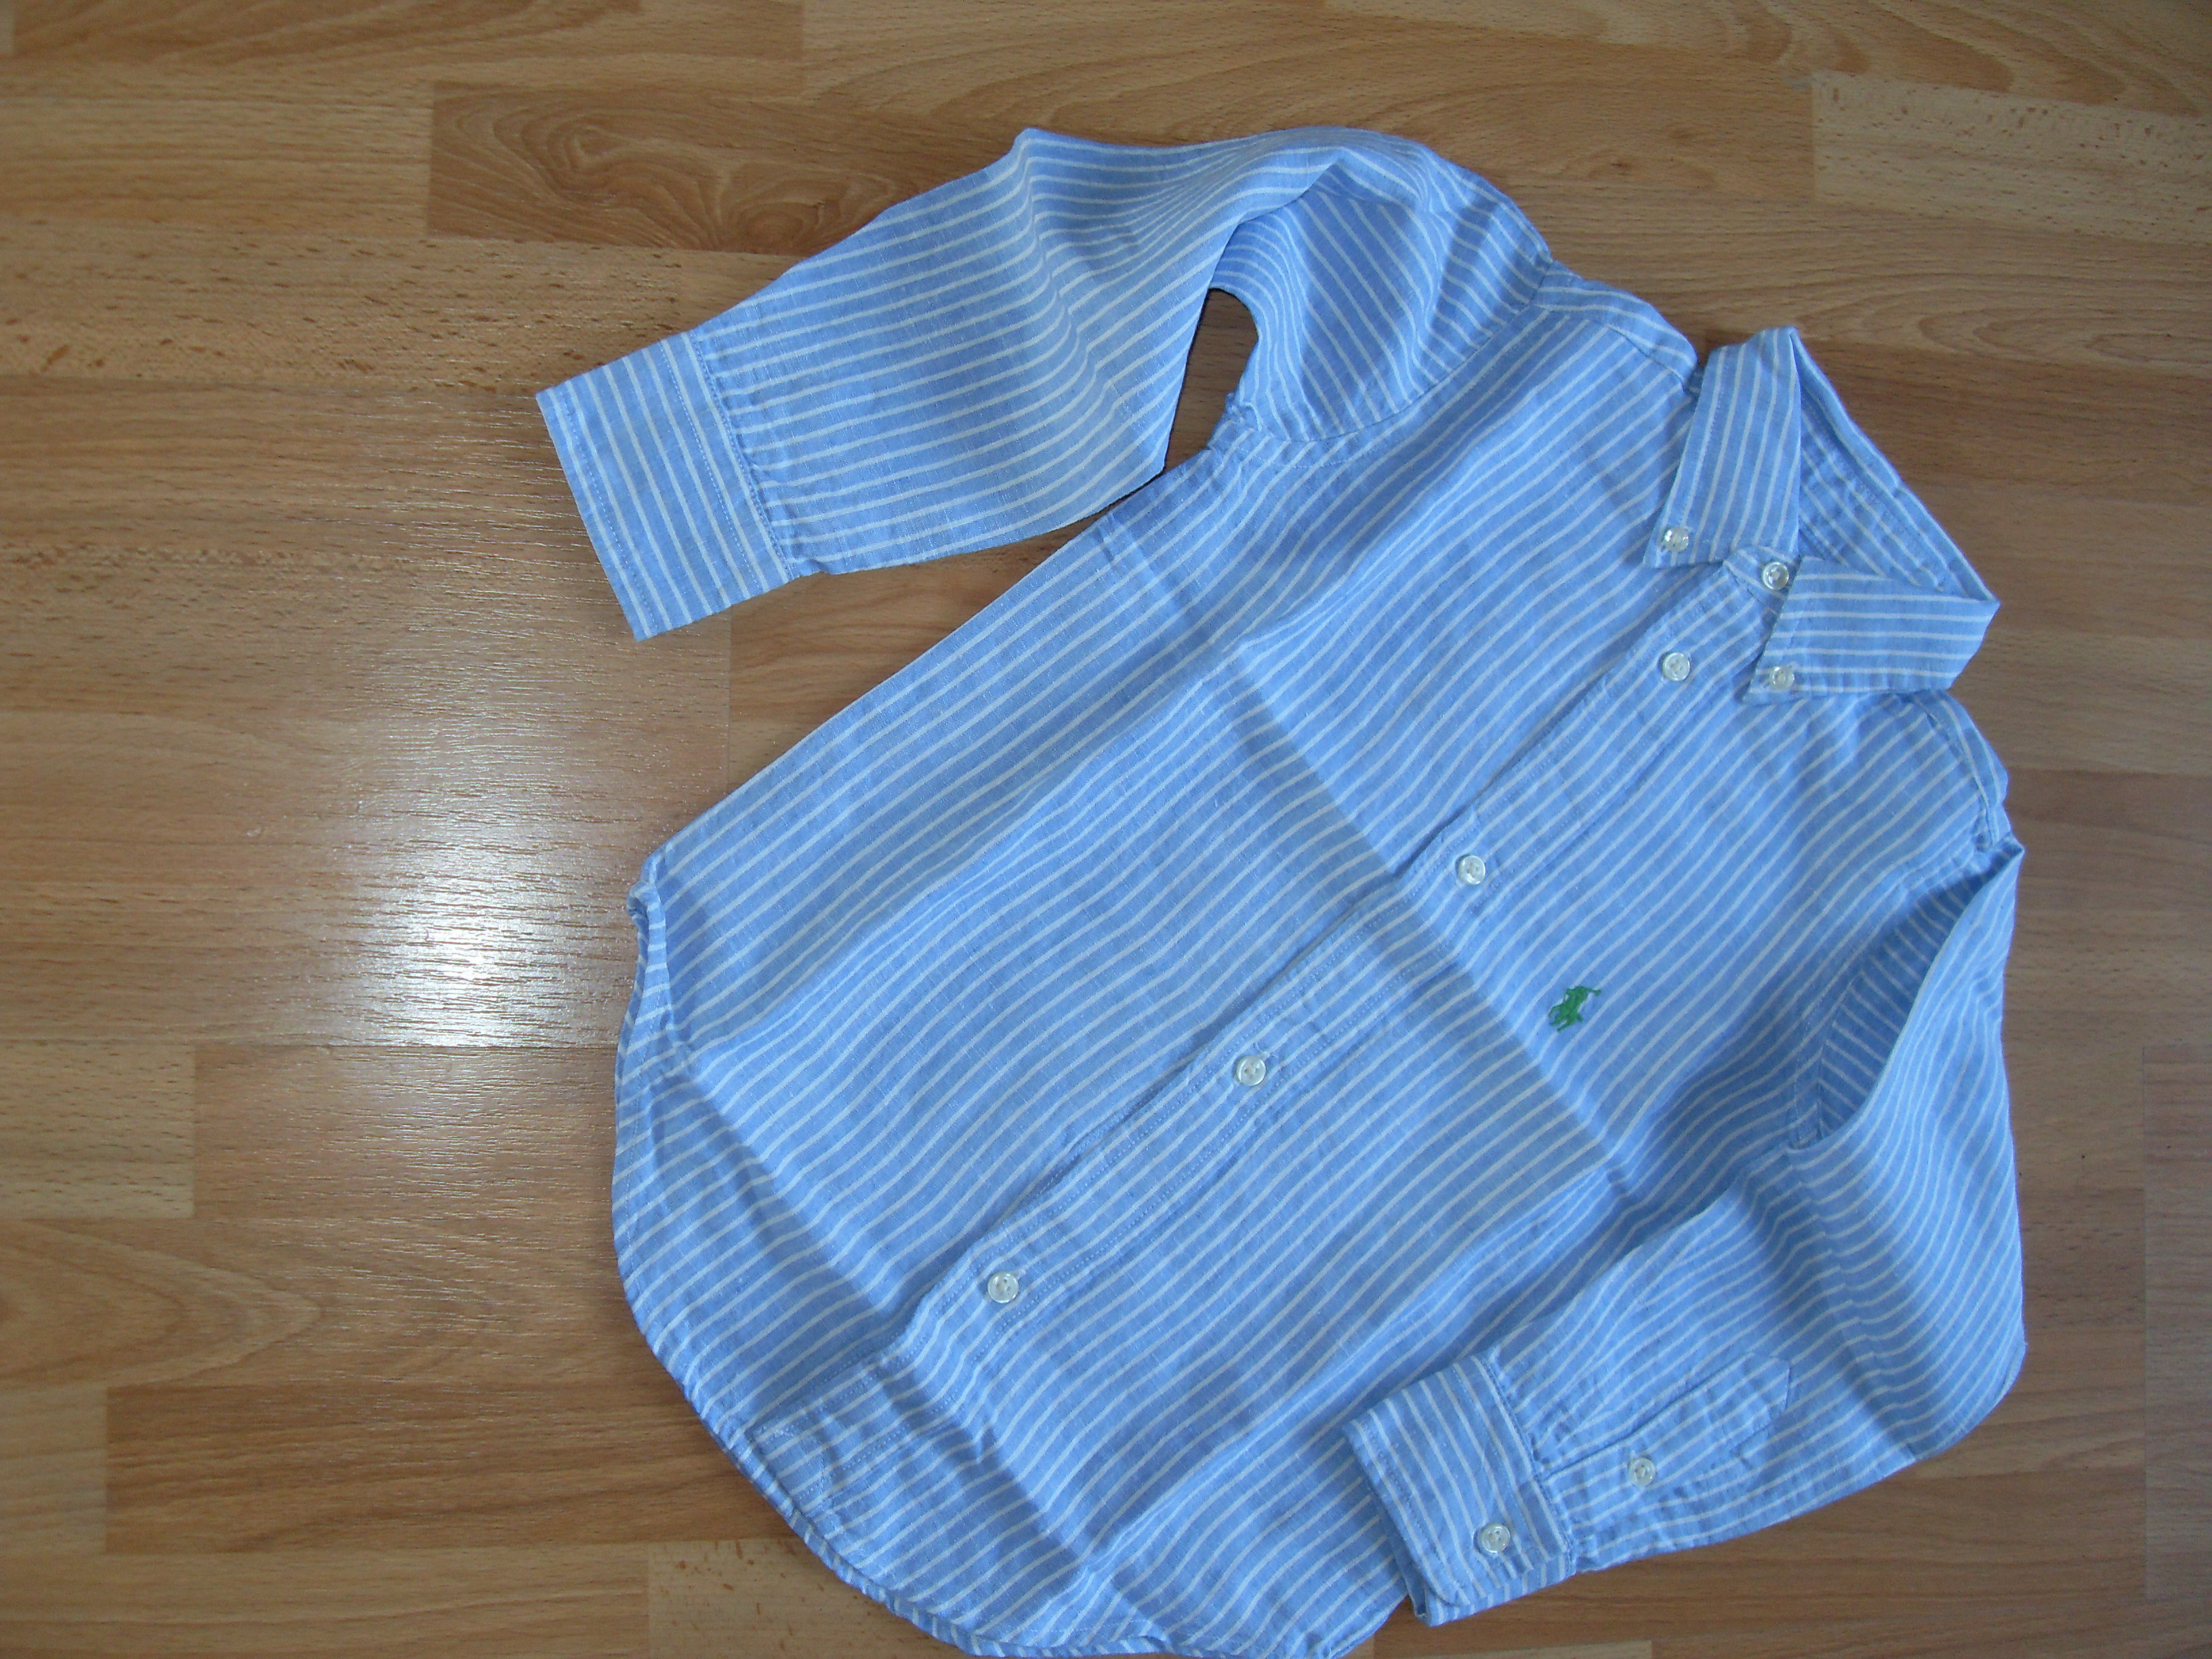 Klik hier om een vergroting van deze - Ralph Lauren  linnen overhemd - te bekijken!